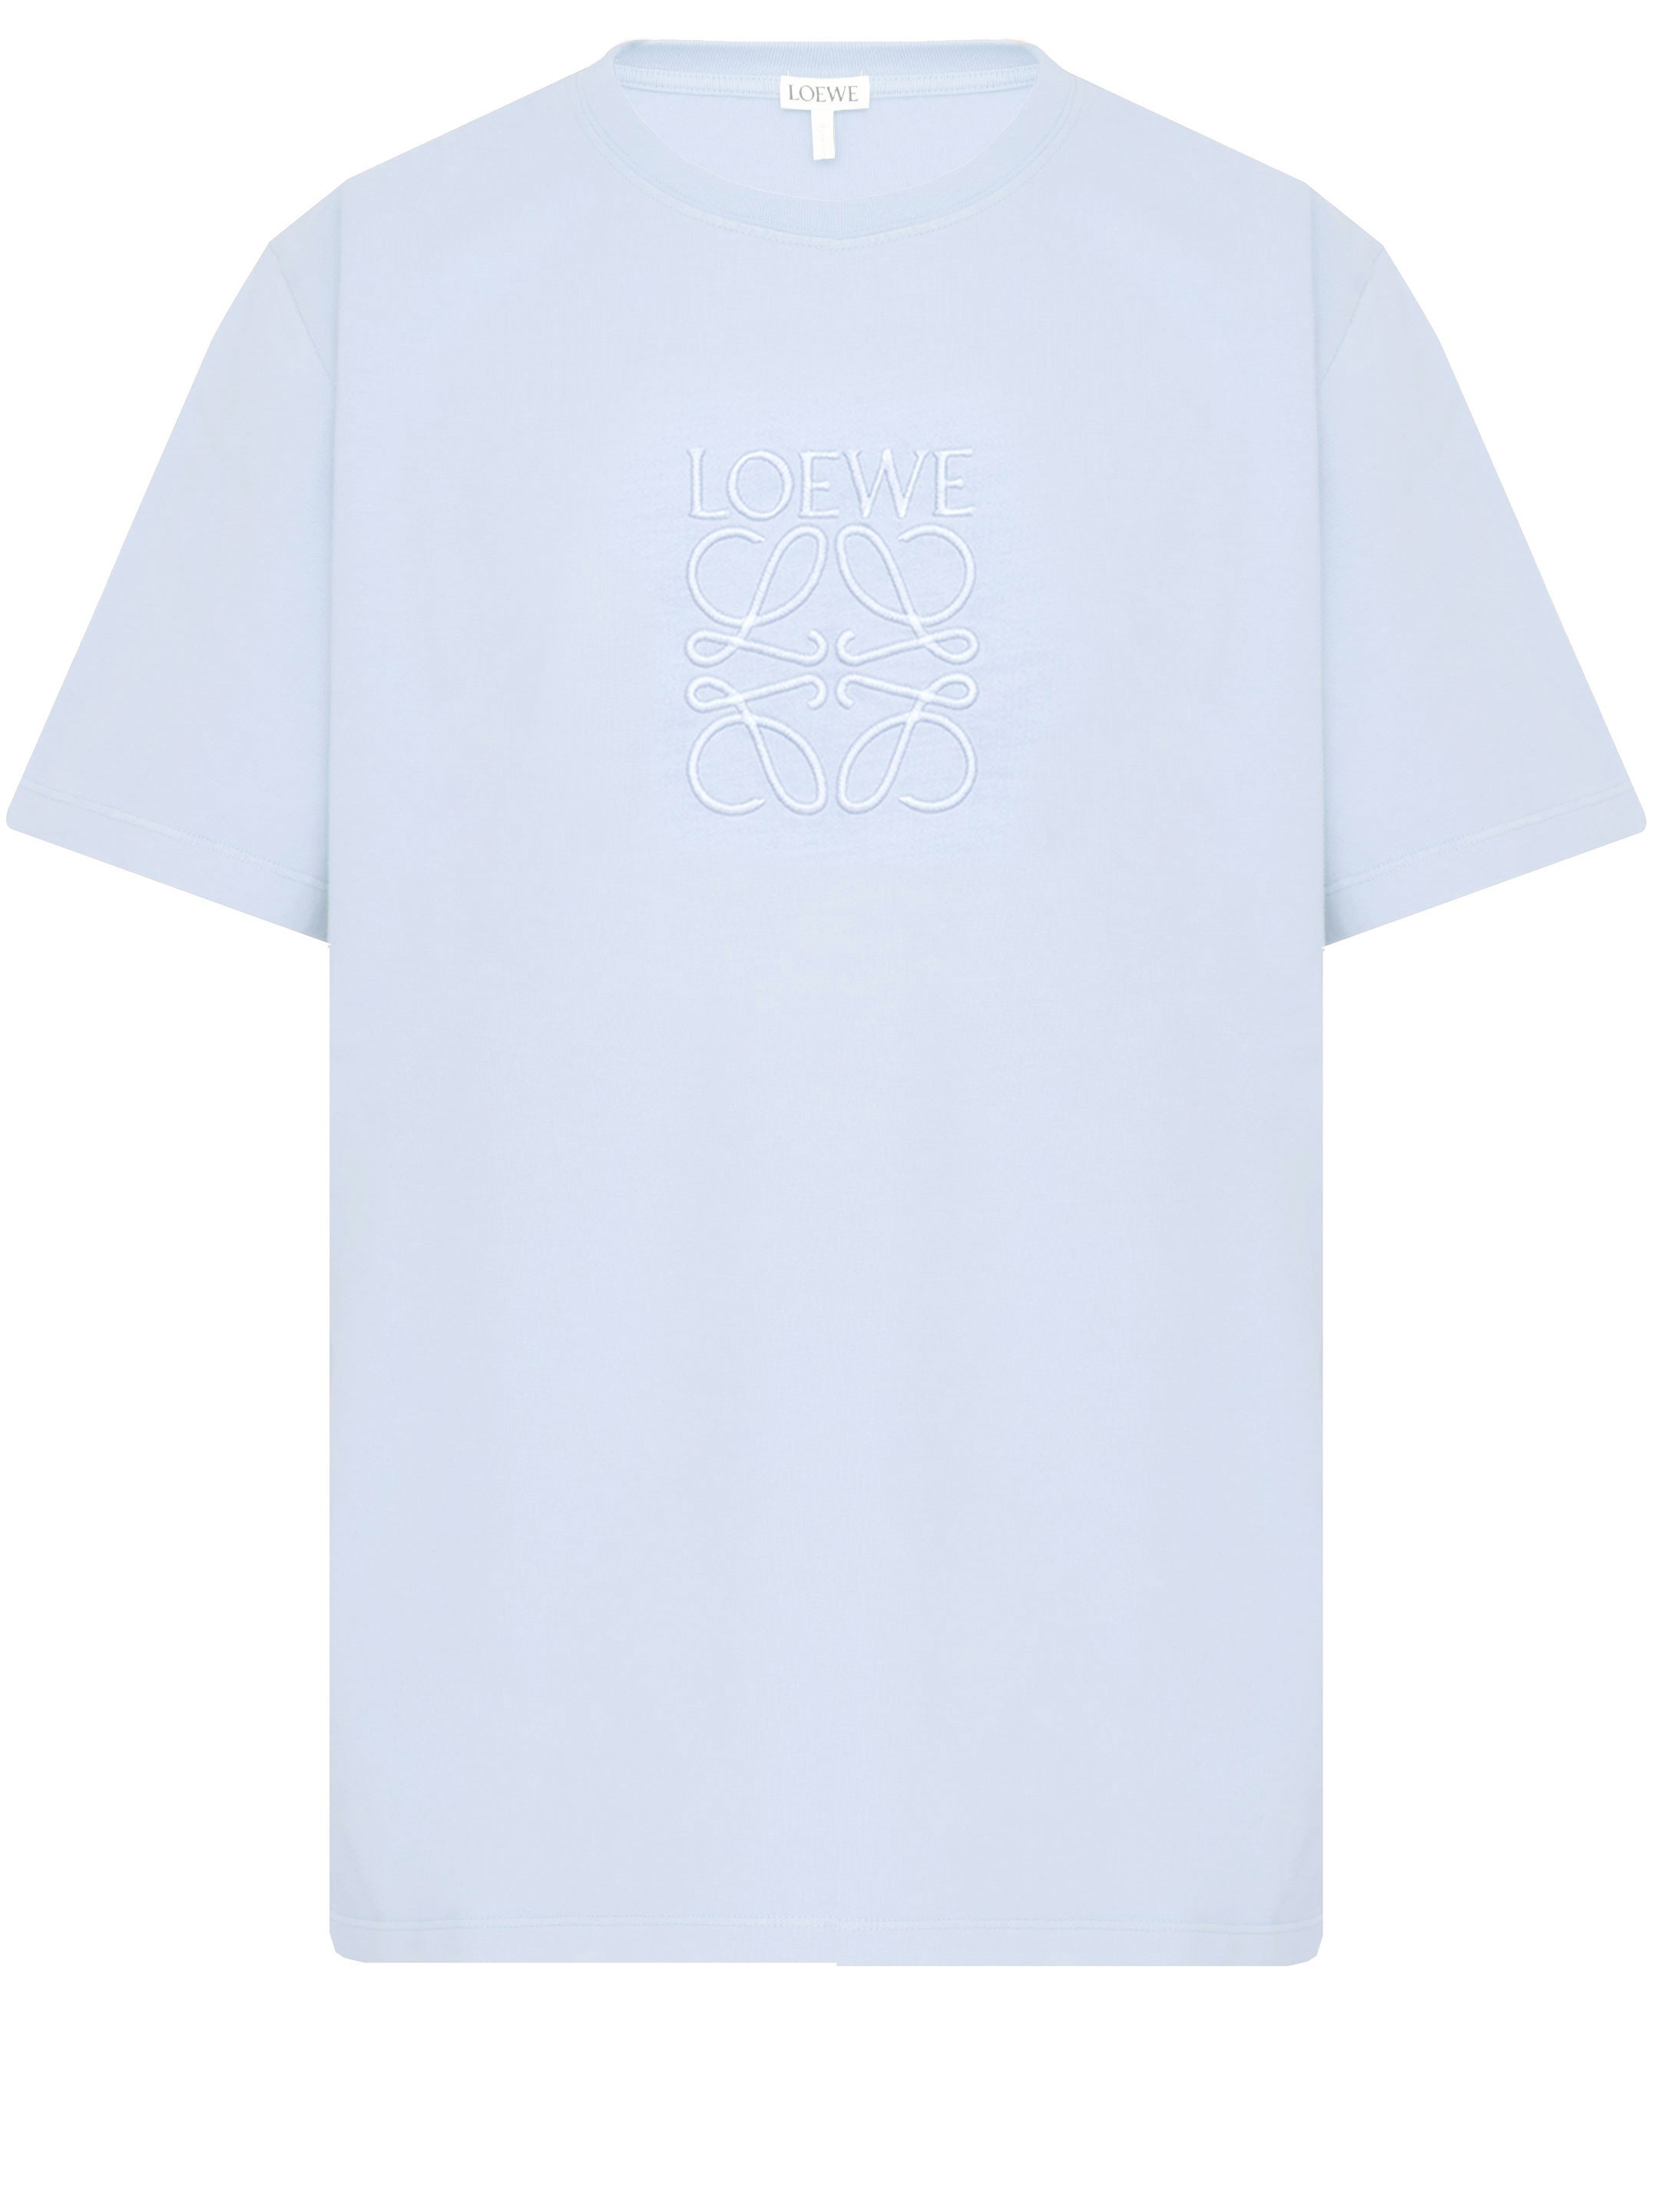 23FW 로에베 아나그램 로고자수 반팔 티셔츠 [M] H526Y22XA4 6410